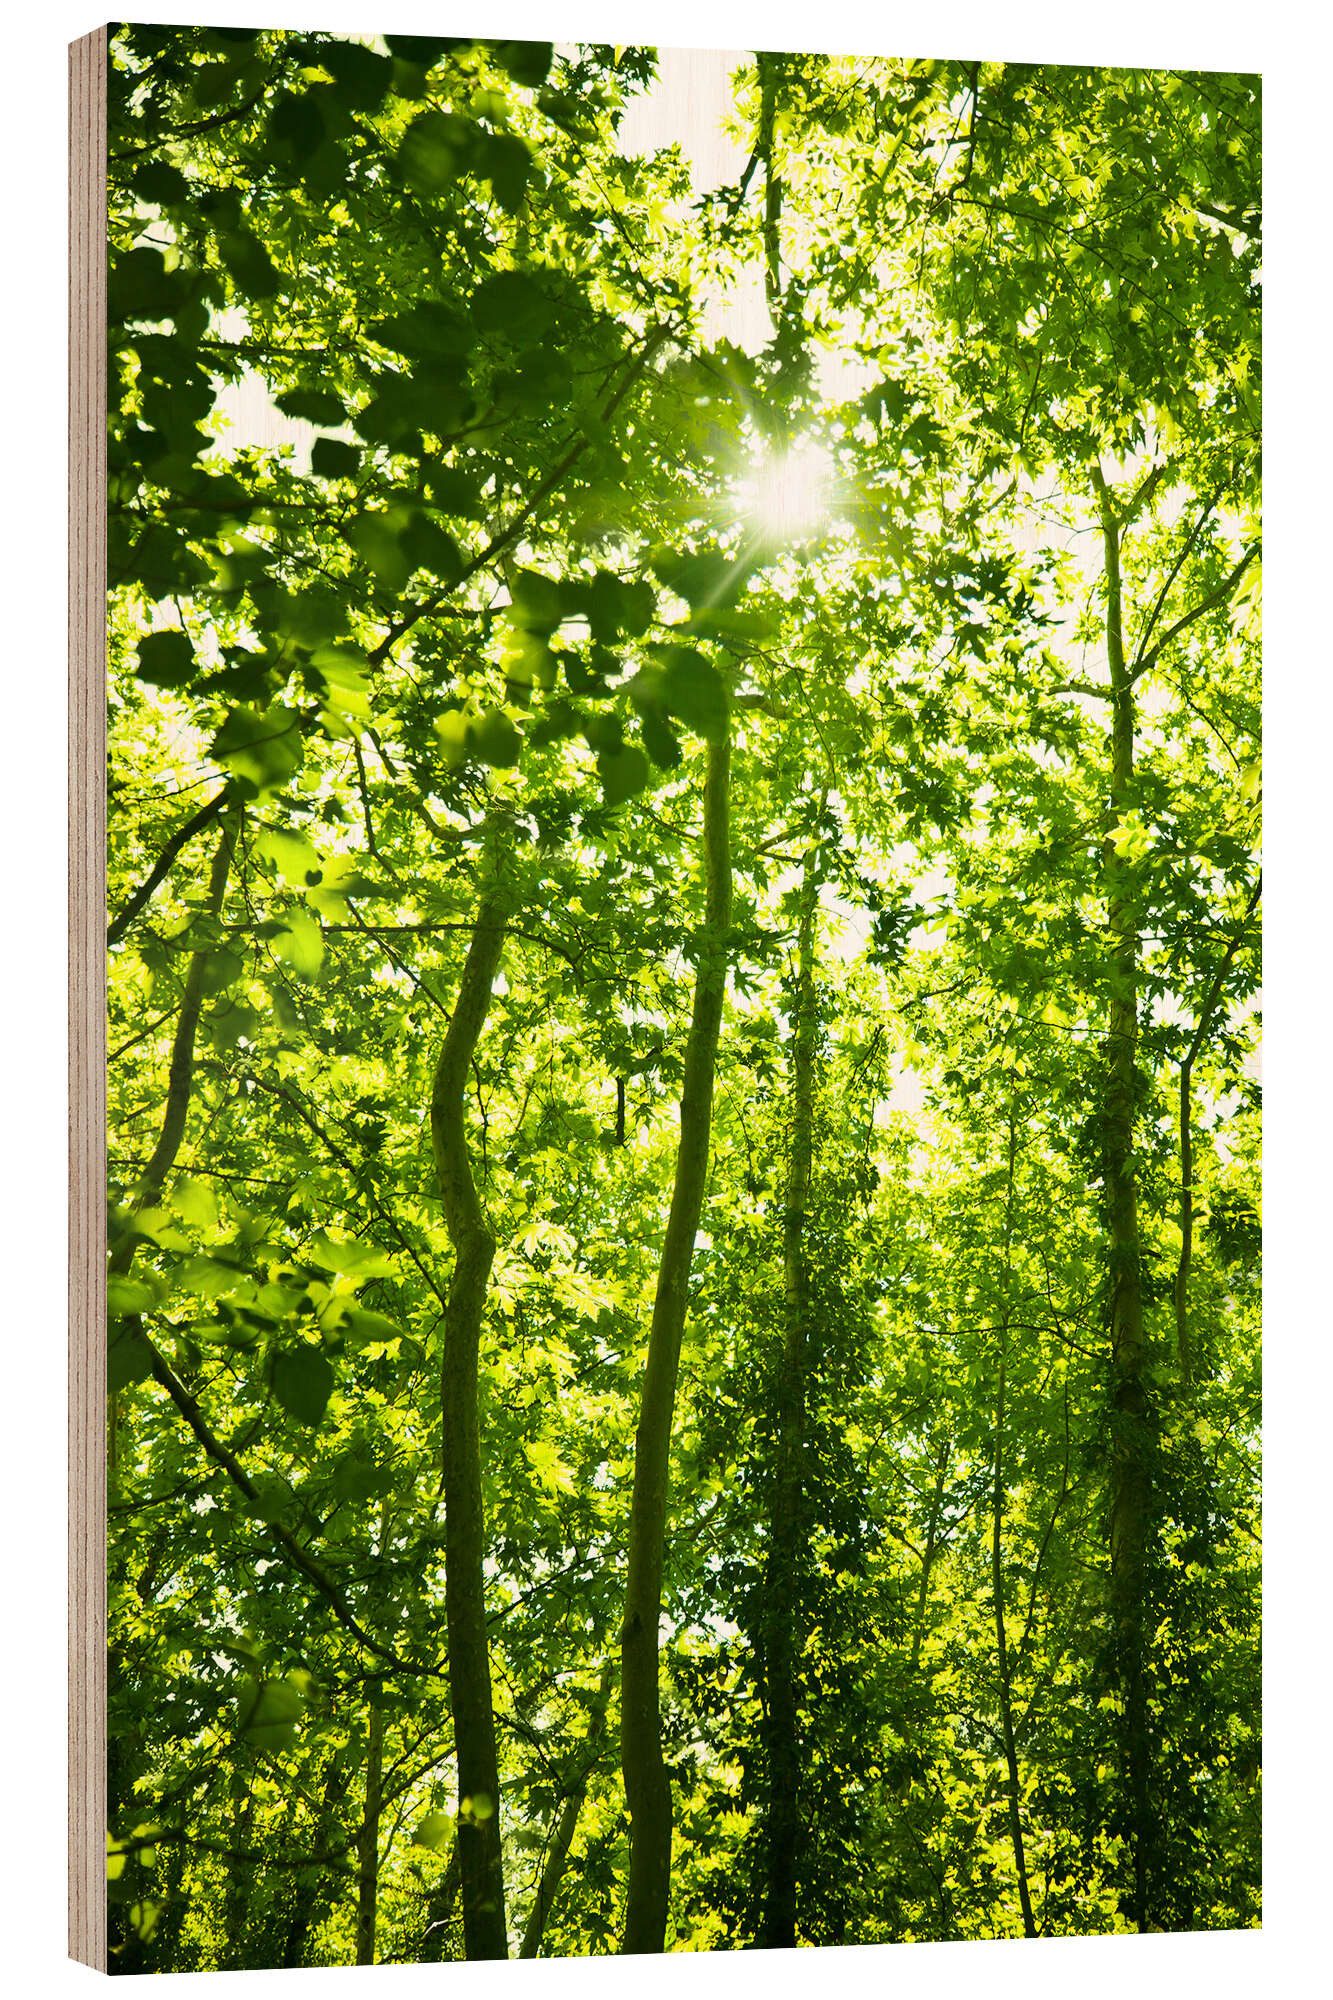 Posterlounge Holzbild Editors Choice, Grüner Wald im Sonnenlicht, Fotografie